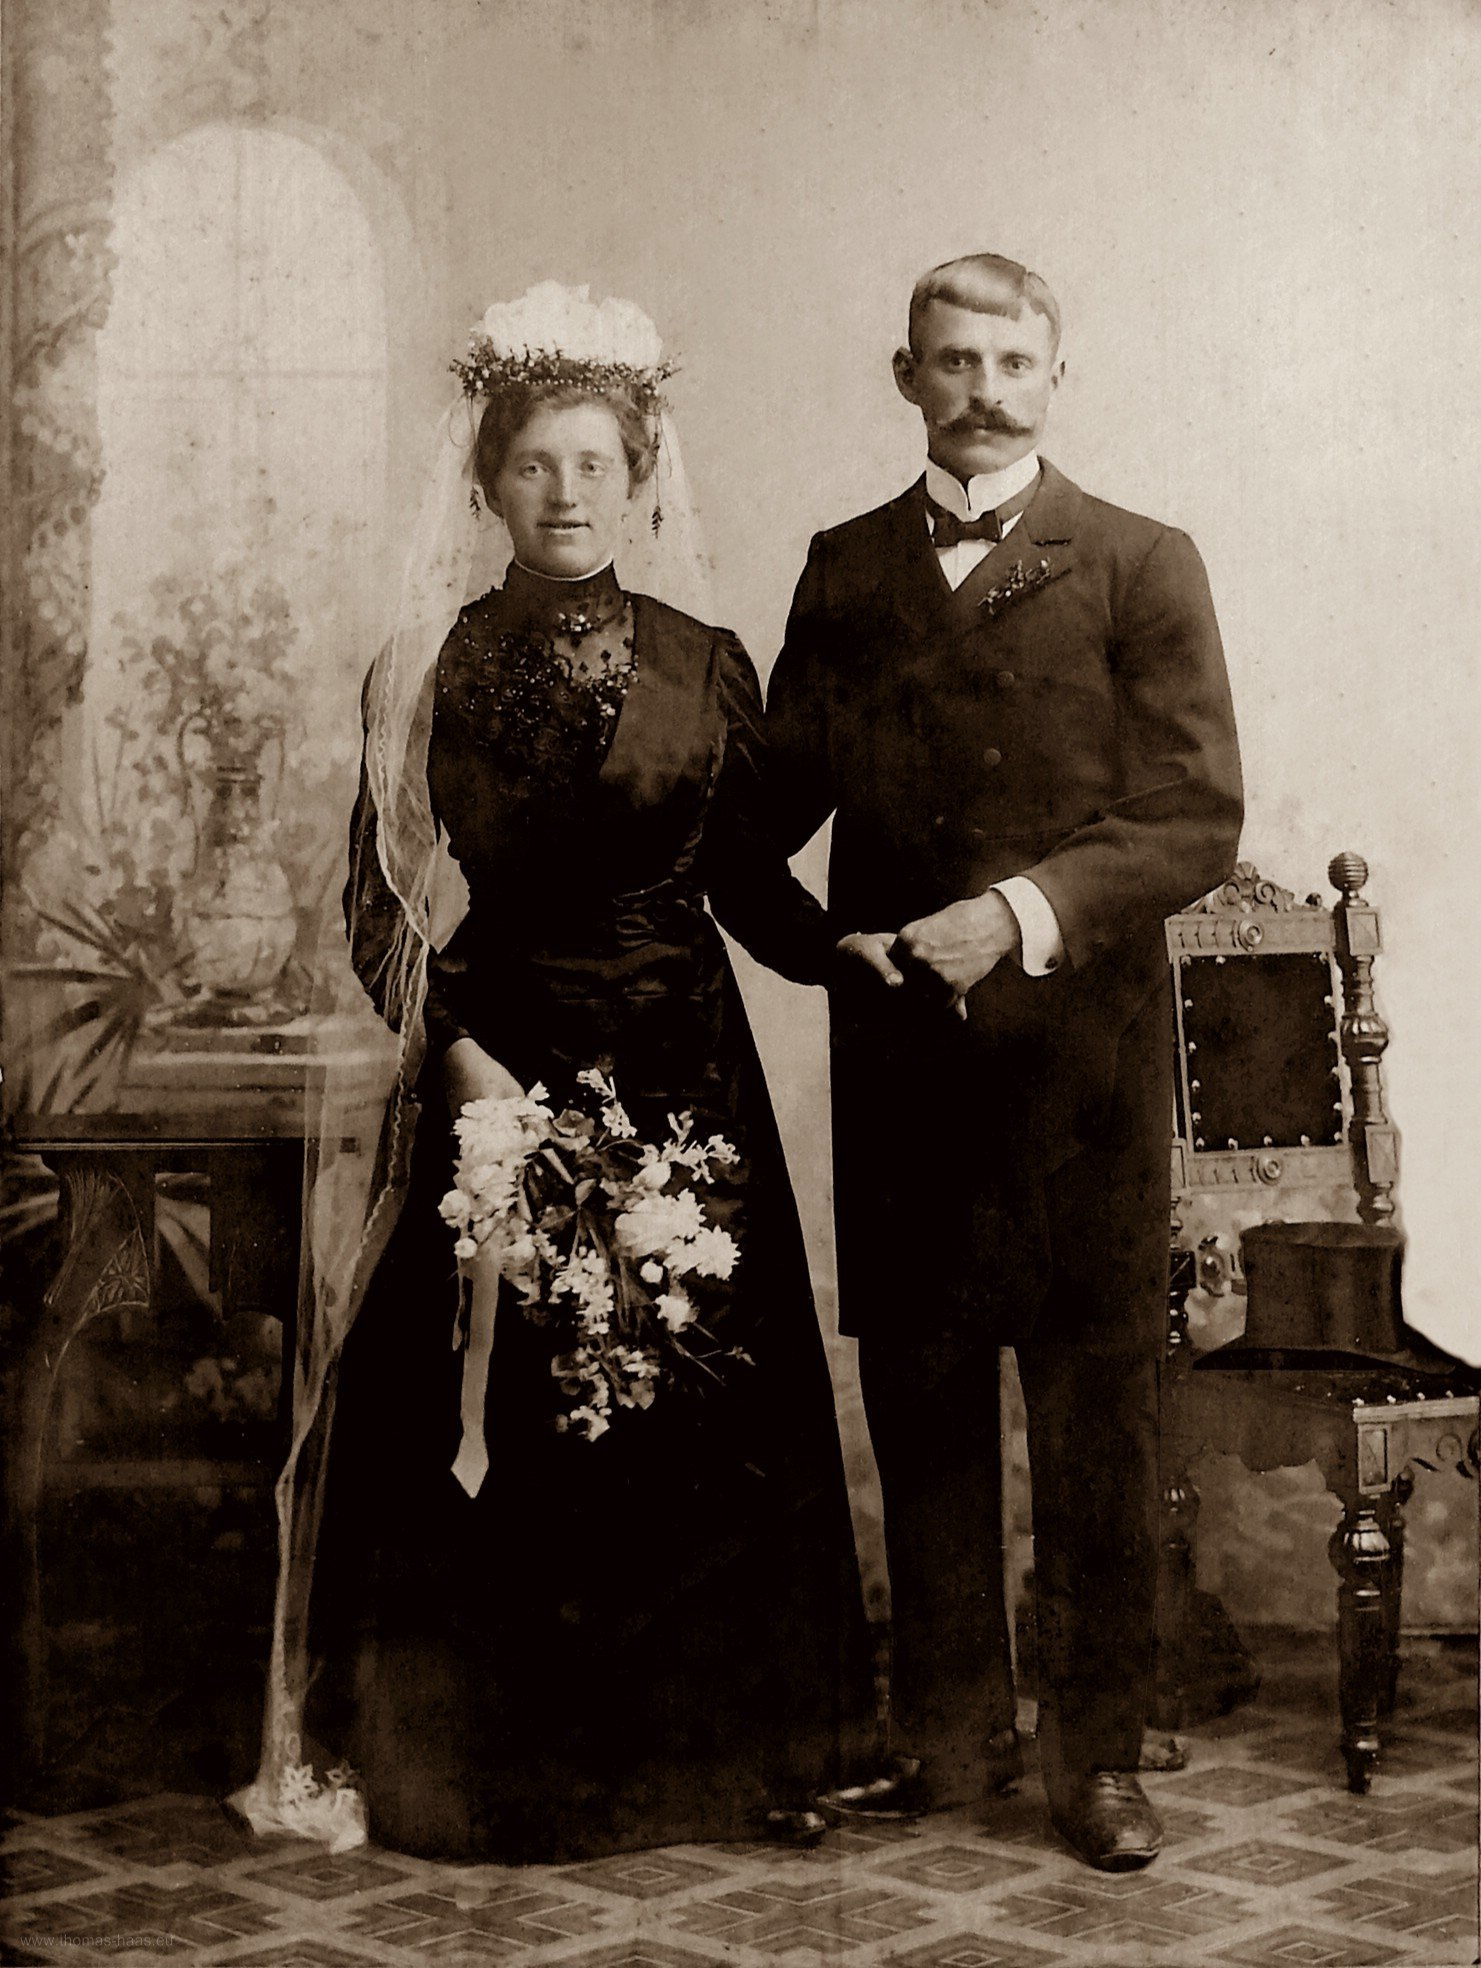 Hochzeitsbild, ca. 1900, Neu-Ulm, Eugen Scheuer